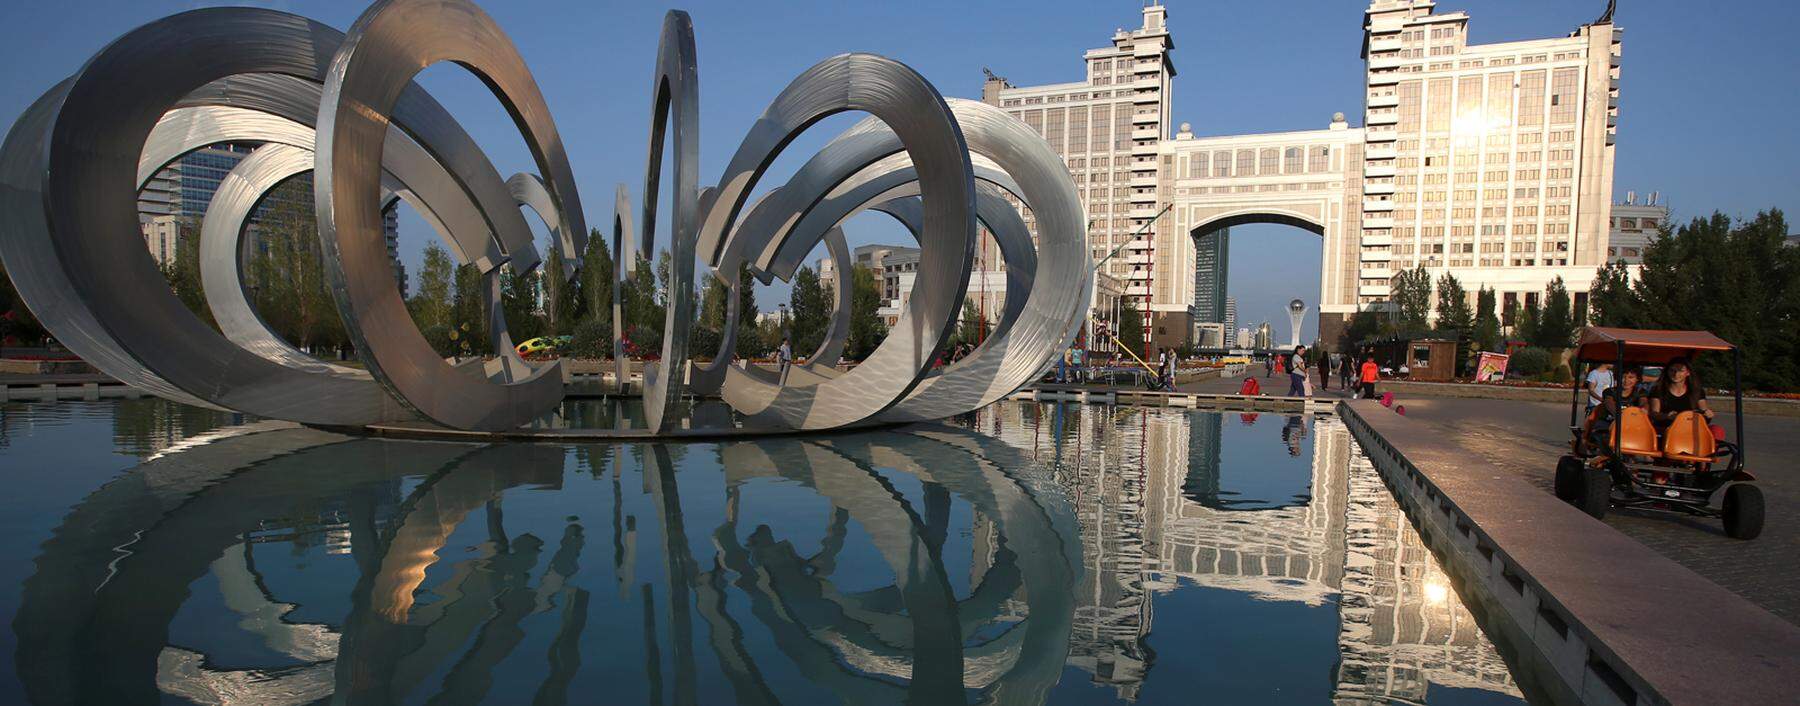 Die kasachische Hauptstadt Nur-Sultan, die bis vor kurzem noch Astana hieß, will sich mehr und besser in Szene setzen.